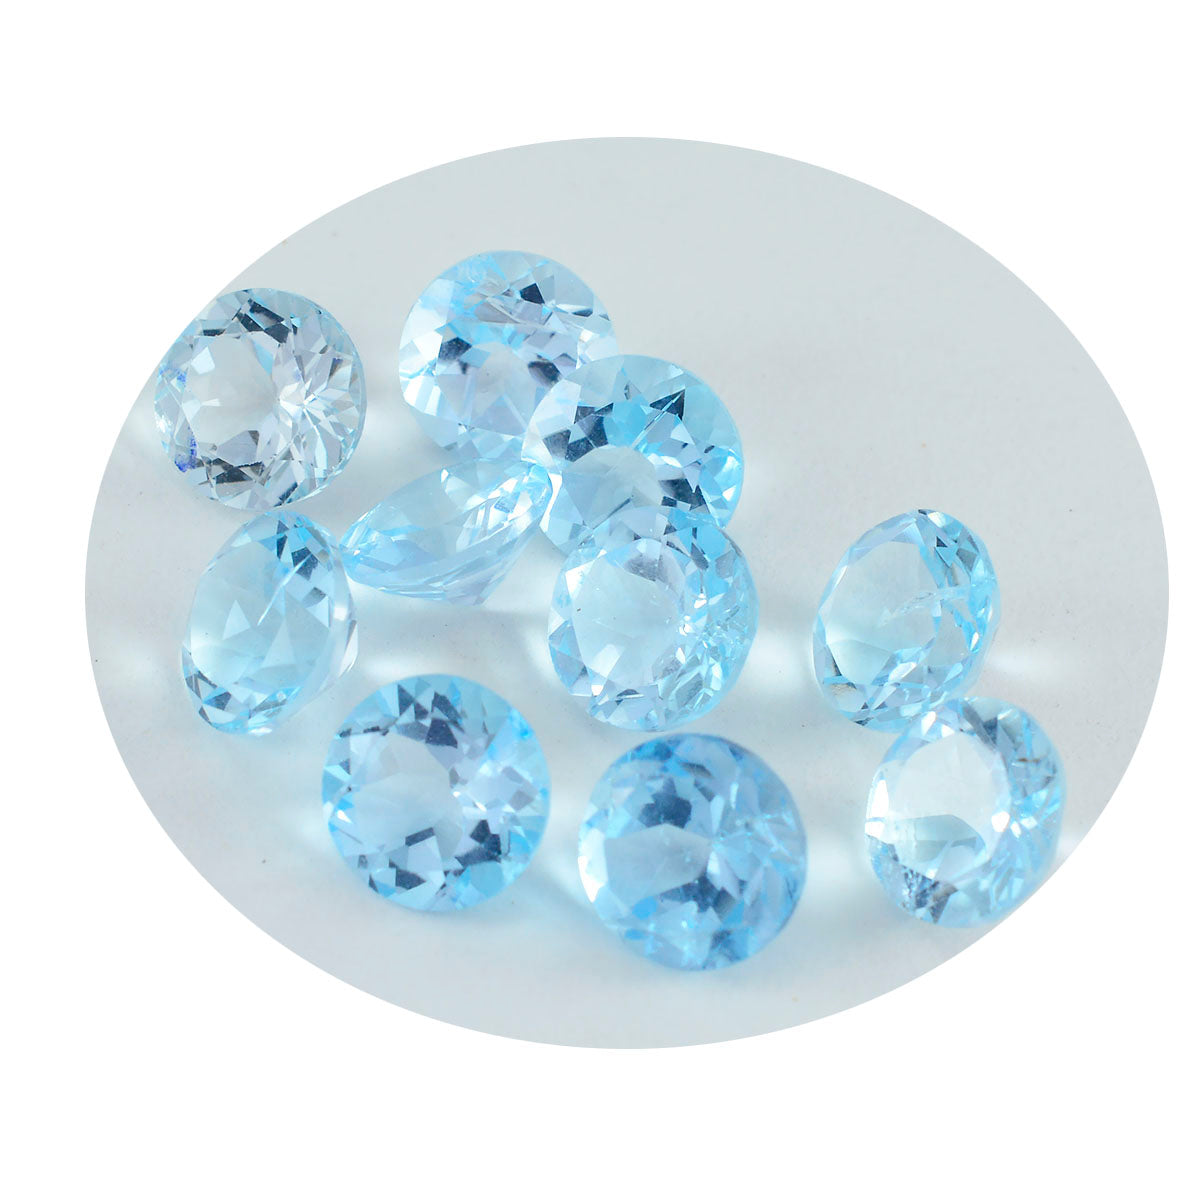 riyogems 1pc ナチュラル ブルー トパーズ ファセット 4x4 mm ラウンド形状の甘い品質のルース宝石